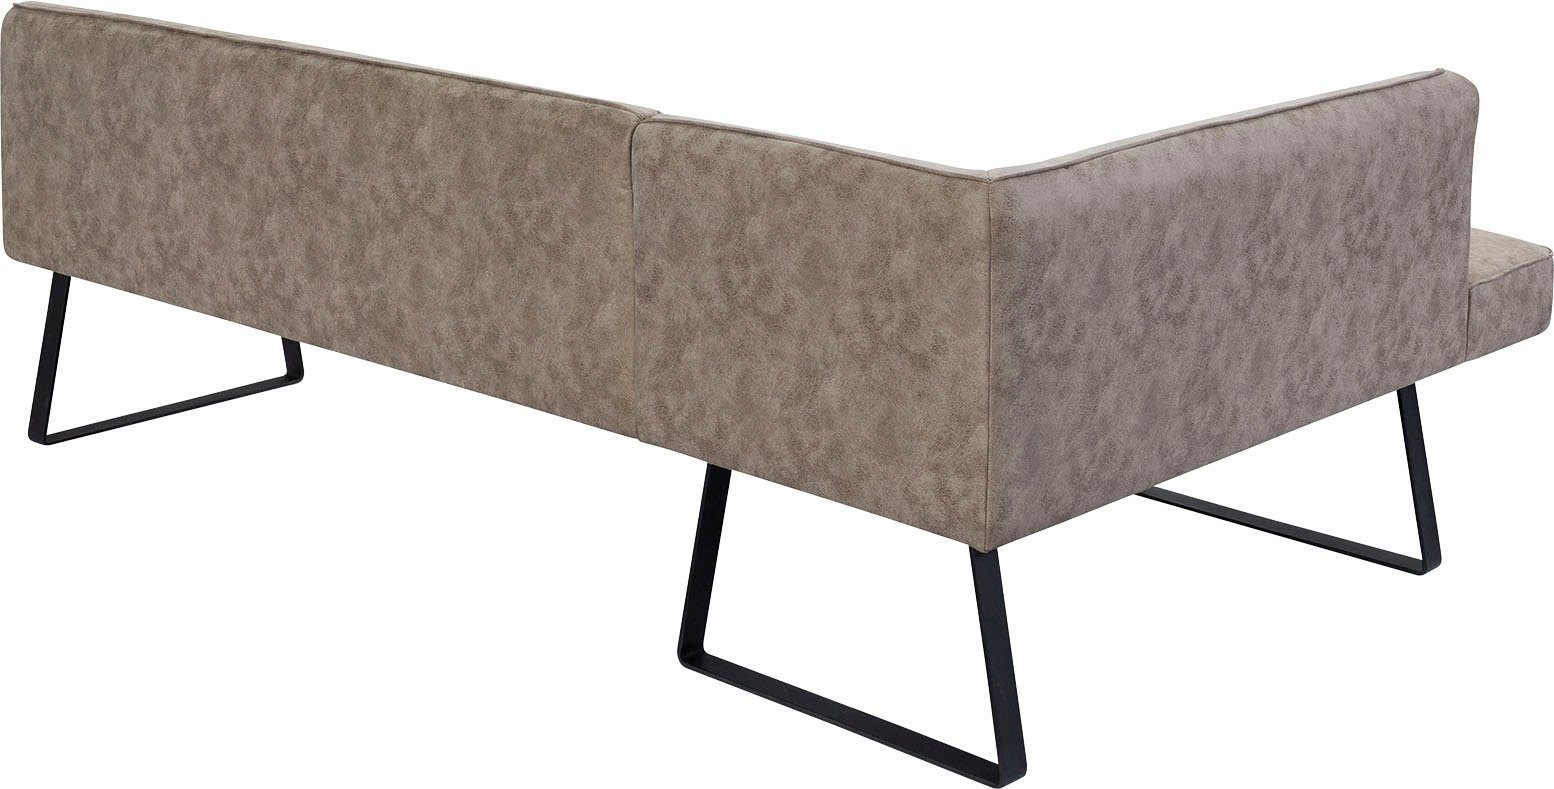 exxpo - sofa fashion Bezug in Metallfüßen, Qualitäten Americano, mit und Keder Eckbank verschiedenen